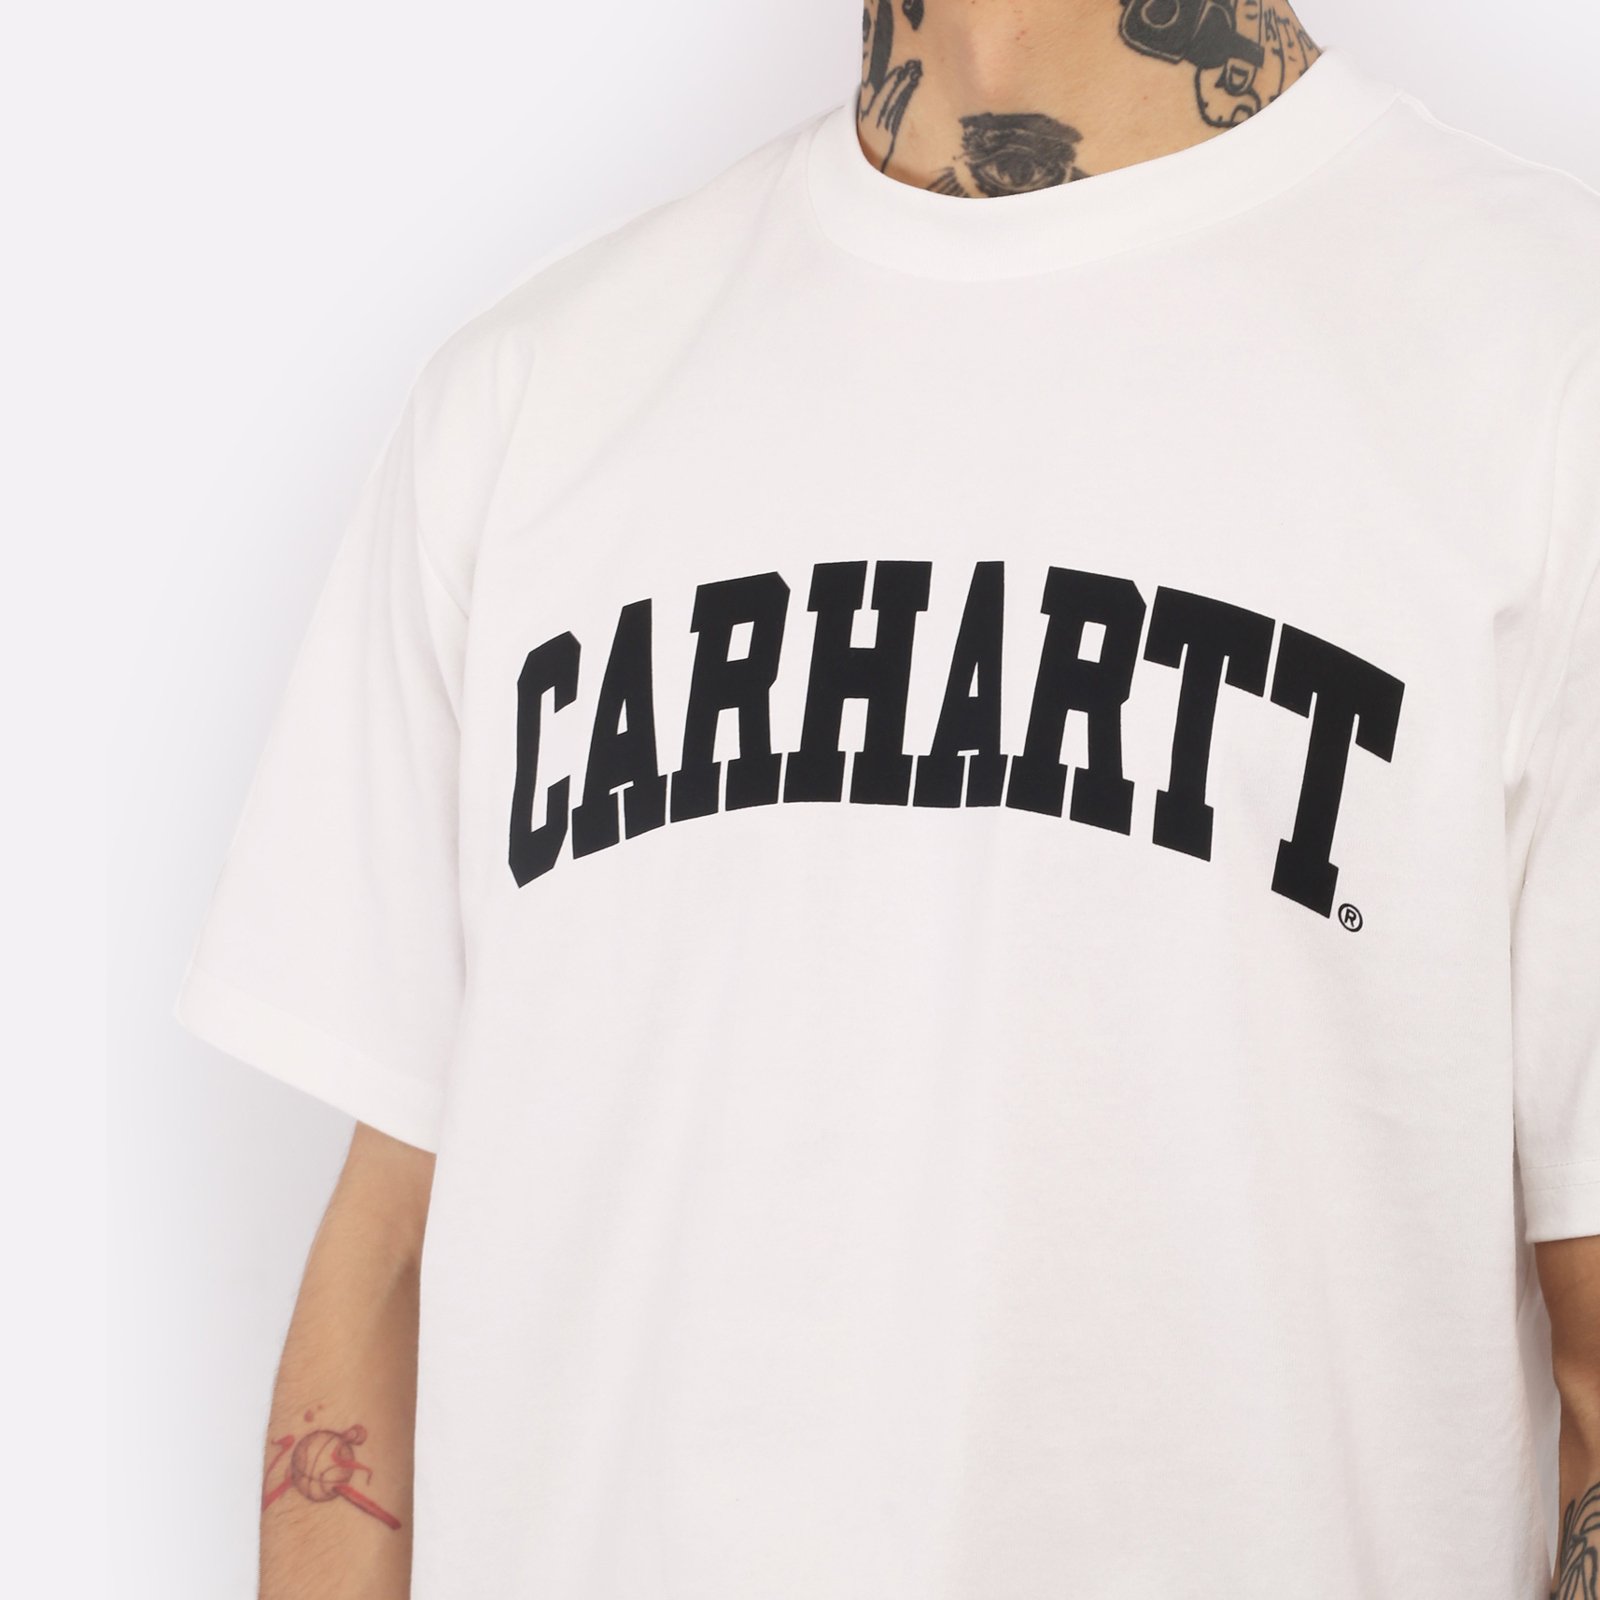 мужская футболка Carhartt WIP S/S University T-Shirt  (I028990-white/black)  - цена, описание, фото 4